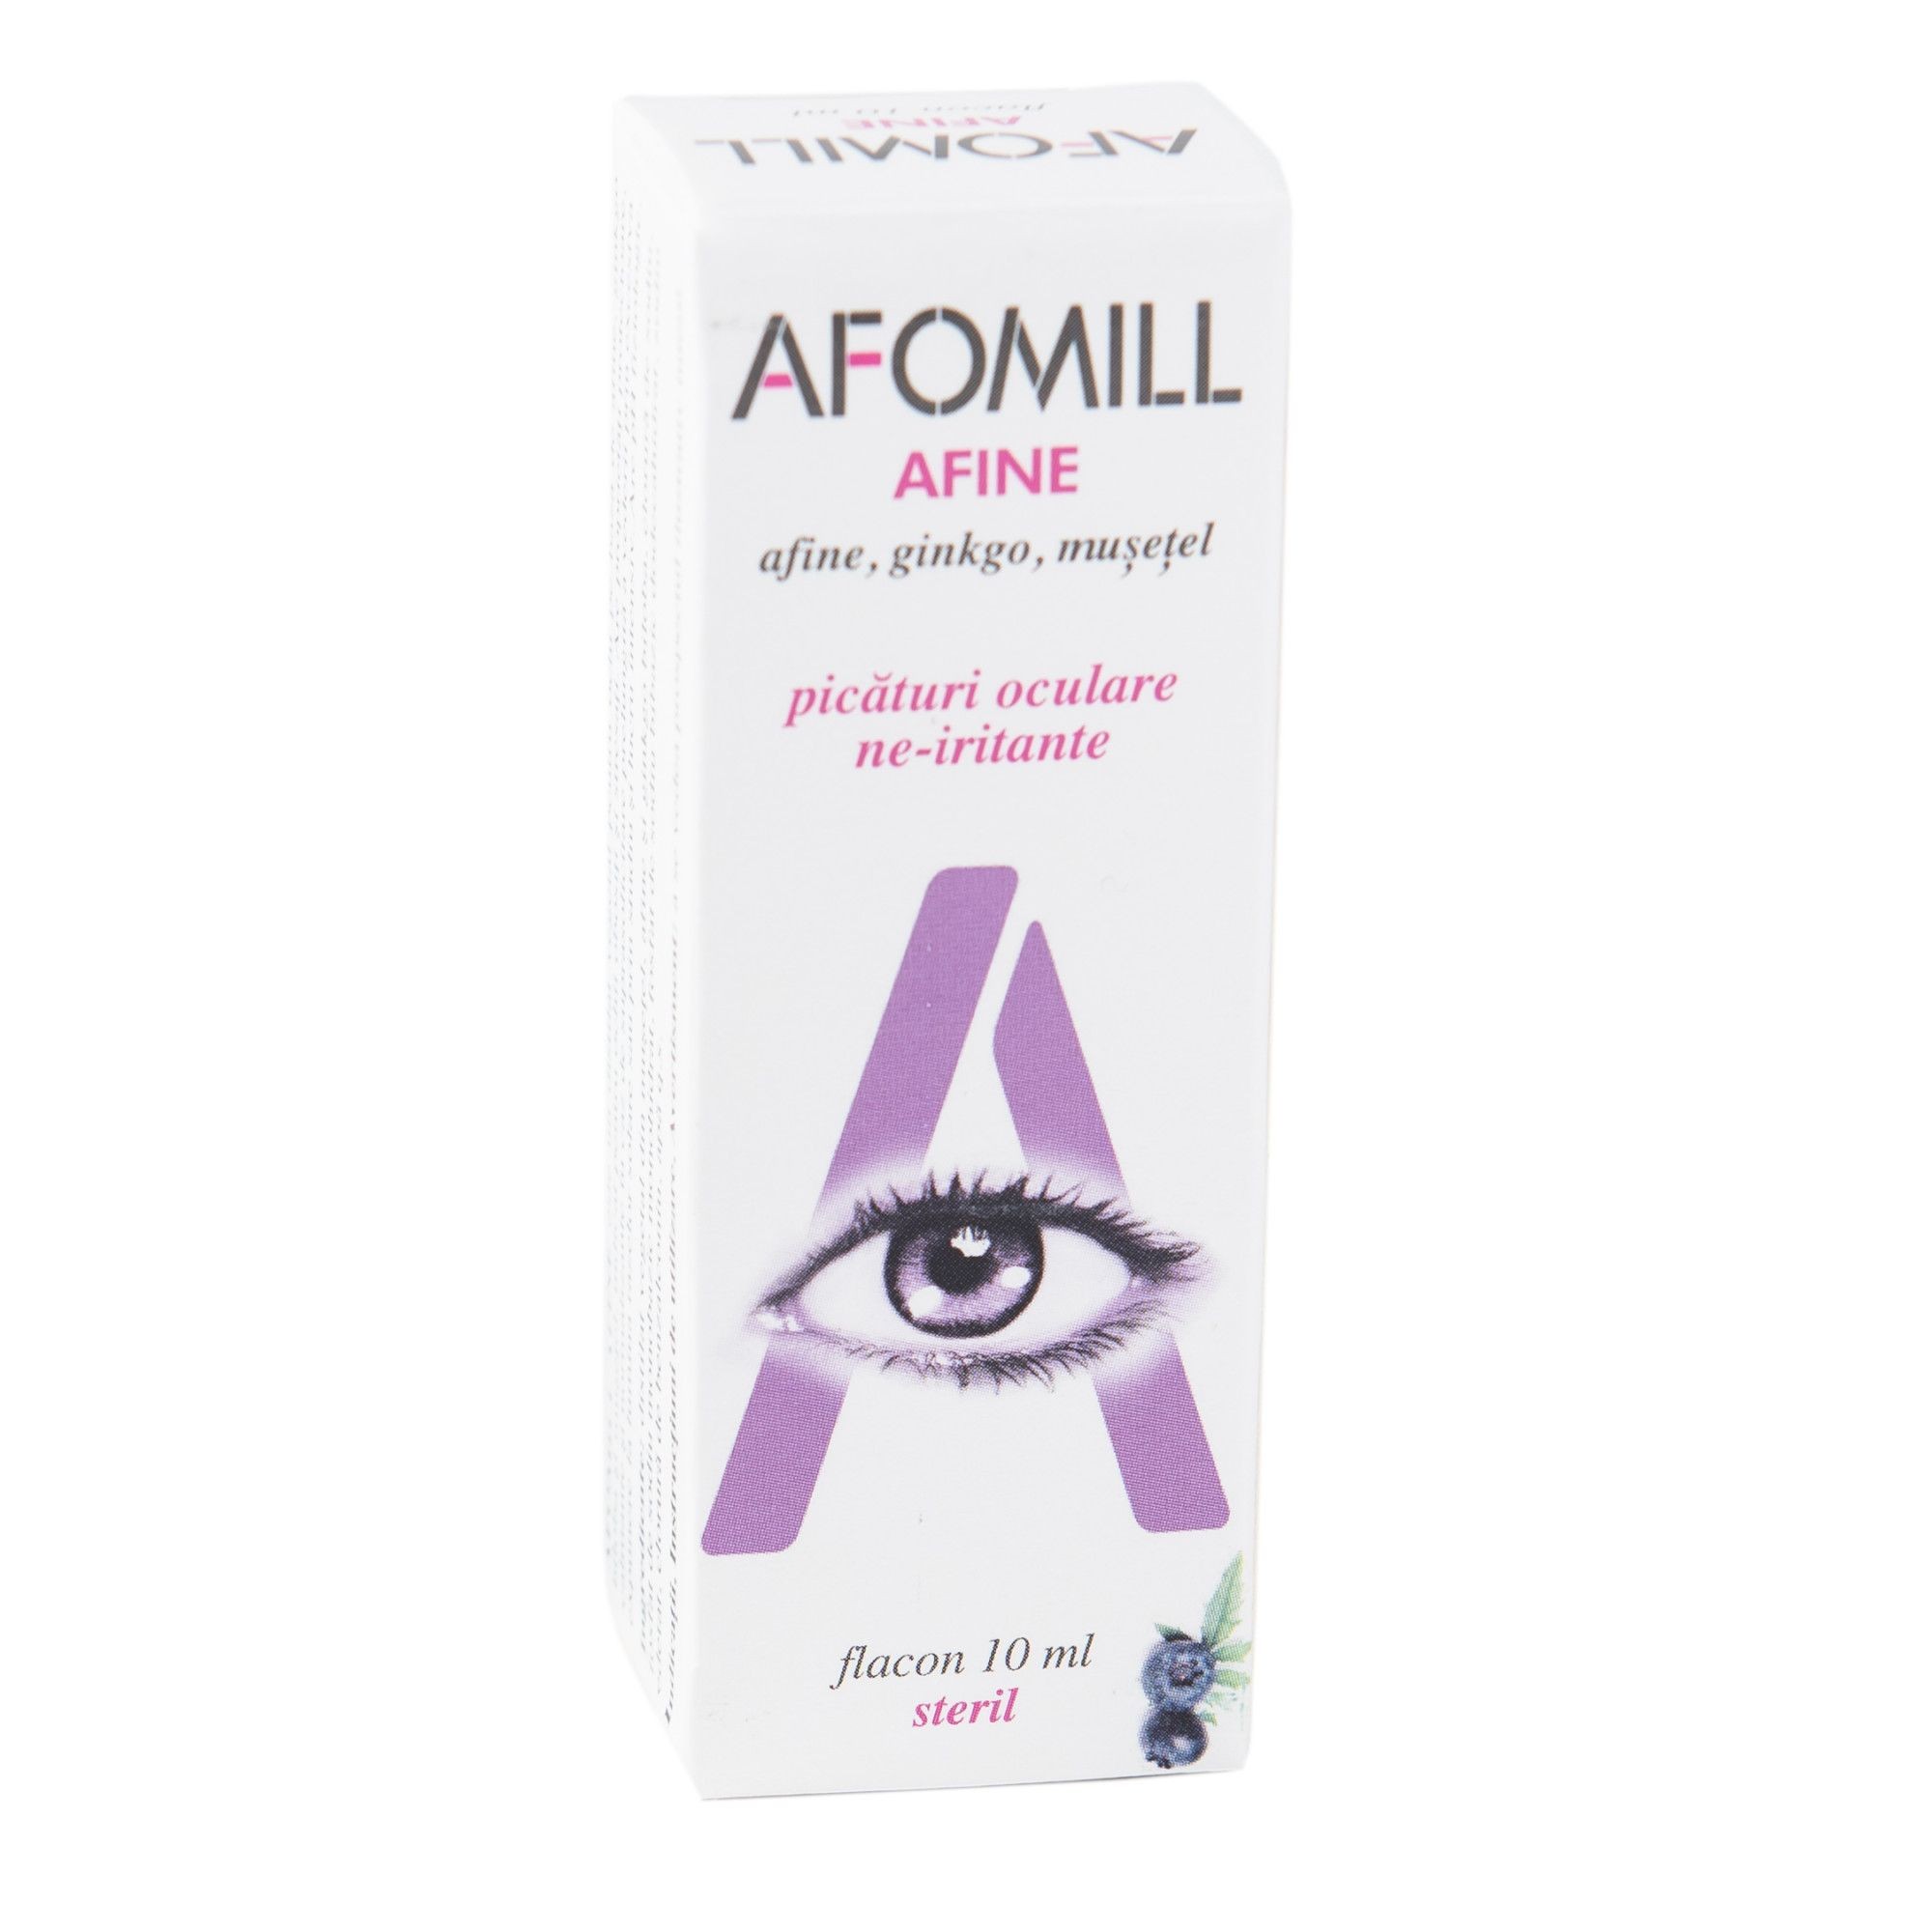 Produse oftalmice - AFOMILL AFINE FORTIFIANT 10 ML AF UNITED, axafarm.ro